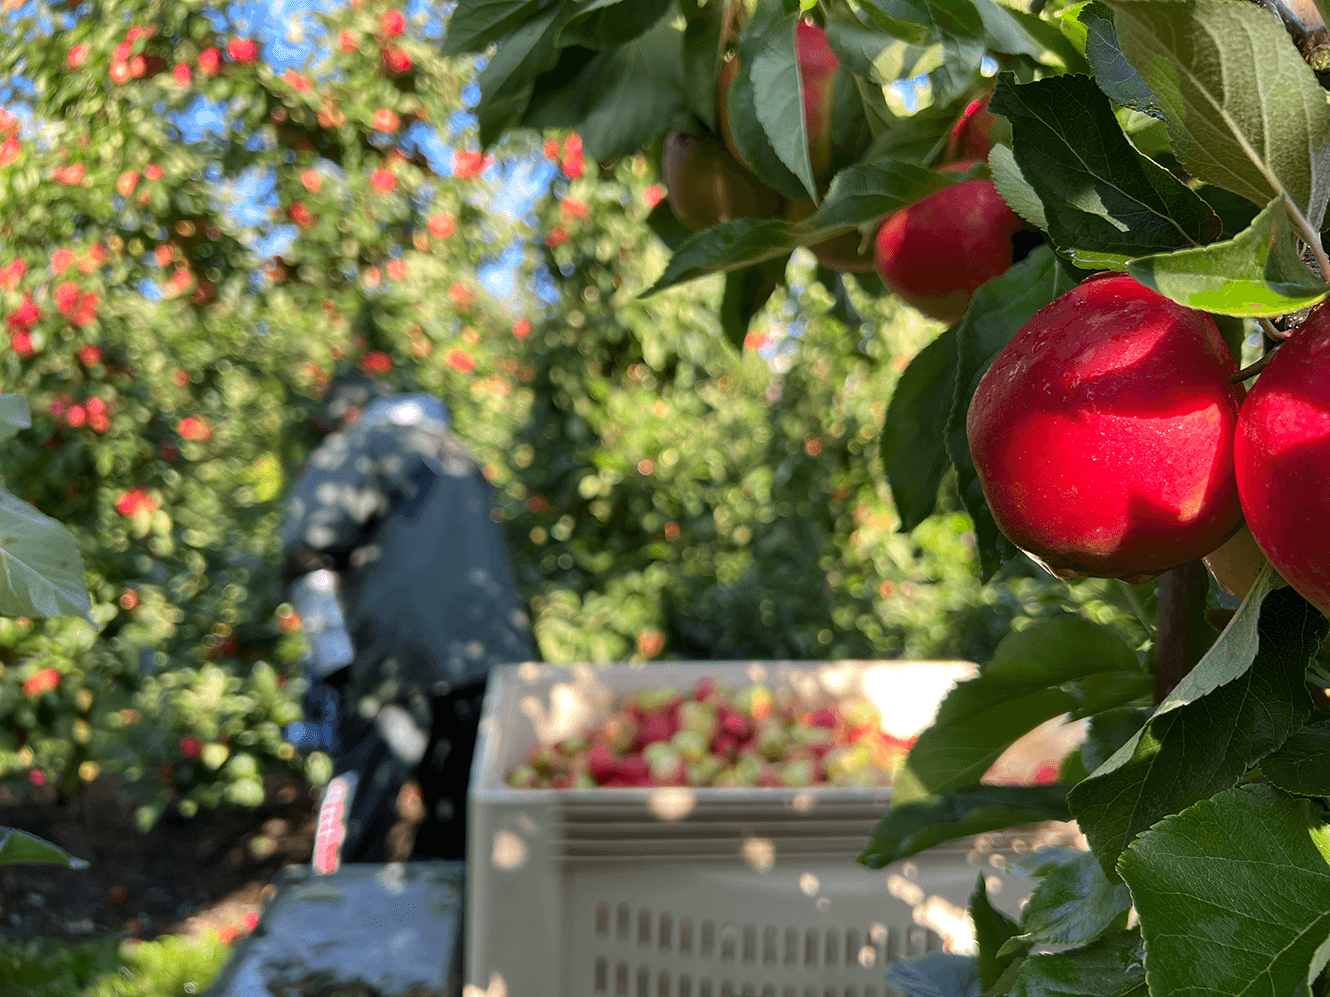 Zbiór duńskich jabłek Elstar w sadzie Ørskov Frugt